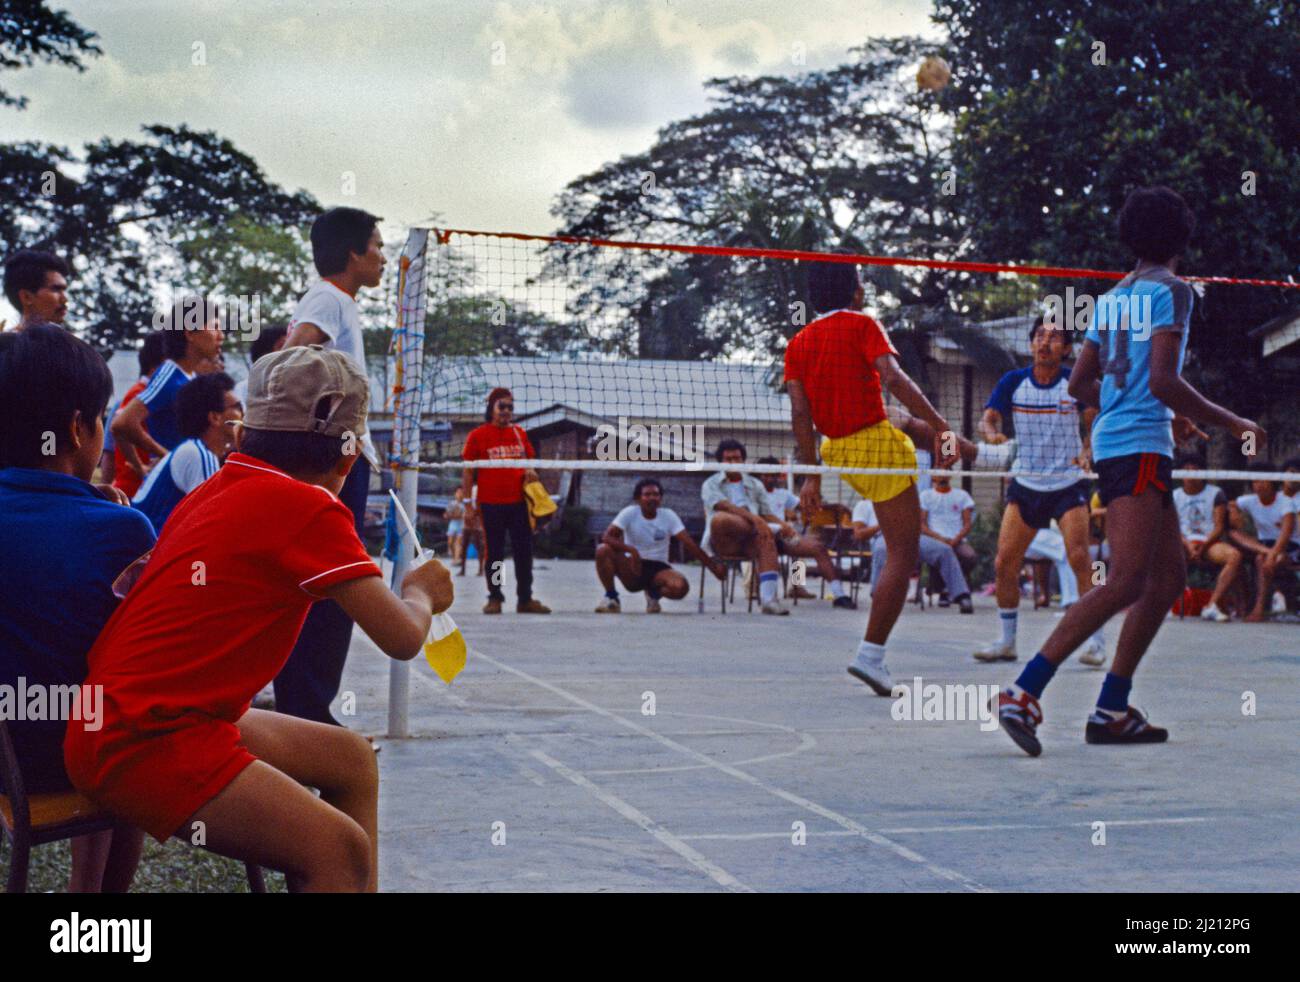 Kuala Lumpur Malaysia Sepak Takraw Amateur Sports Men Playing Volleyball Match Stock Photo